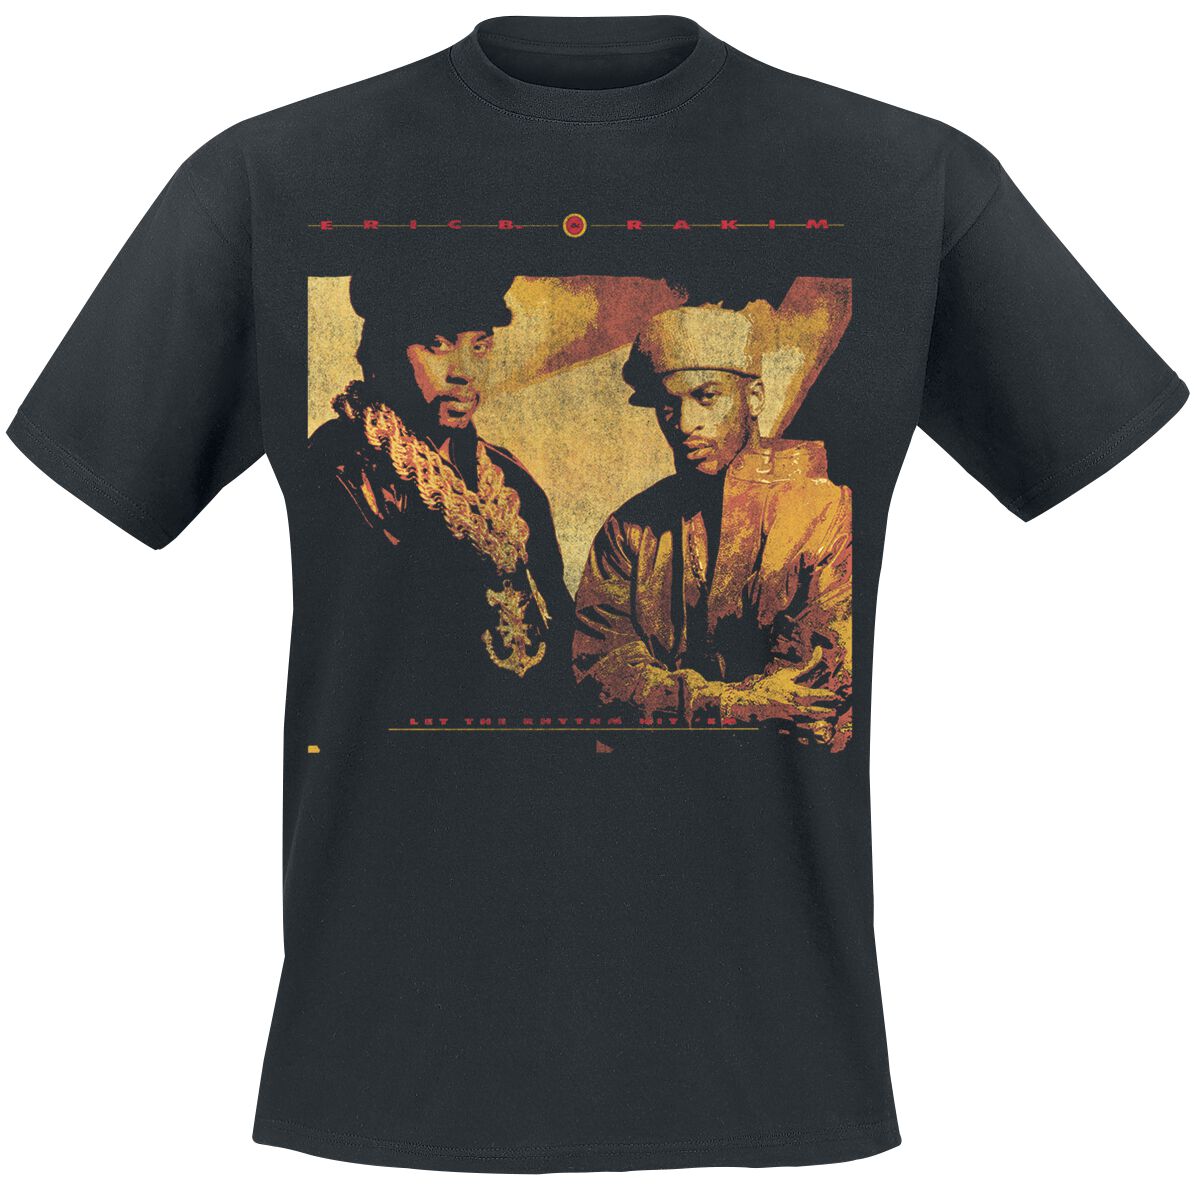 Eric B. & Rakim T-Shirt - Rhythm Hit Em - S bis 3XL - für Männer - Größe L - schwarz  - Lizenziertes Merchandise!